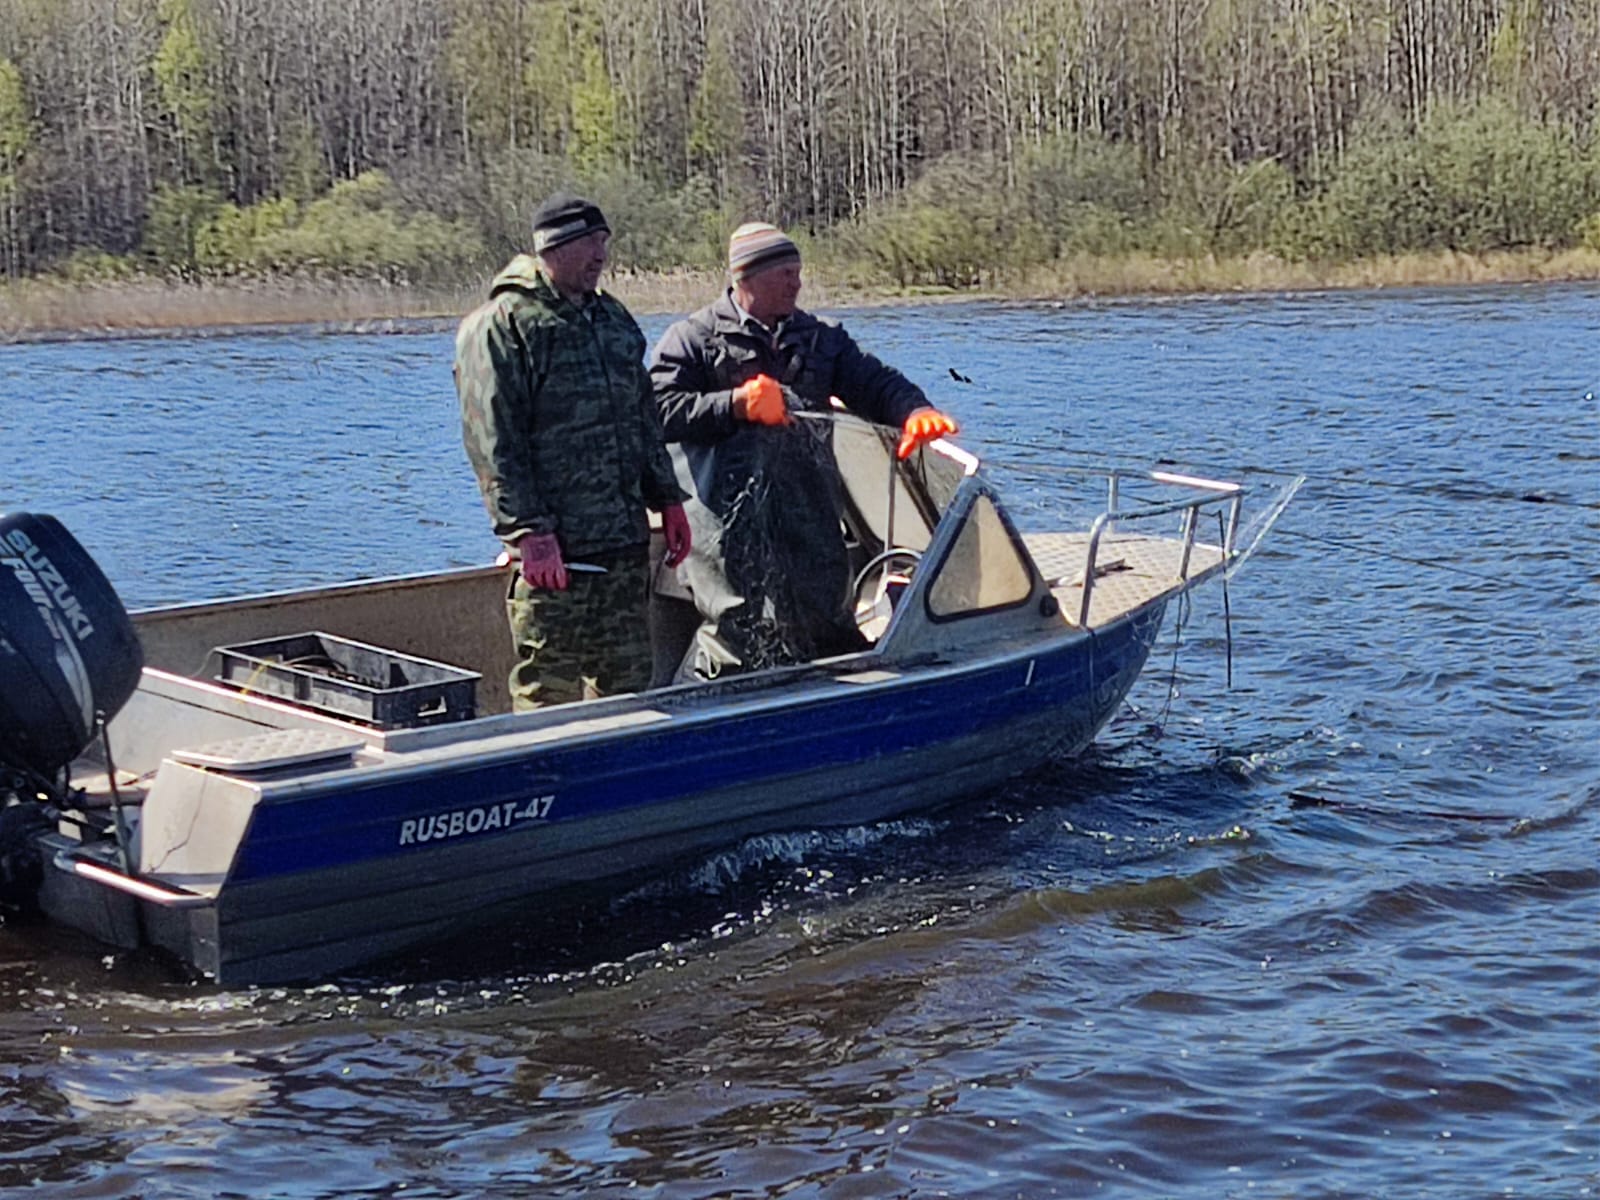 50 километров брошенных рыболовных сетей изъяли из реки Ухры в Ярославской области в рамках всероссийской акции